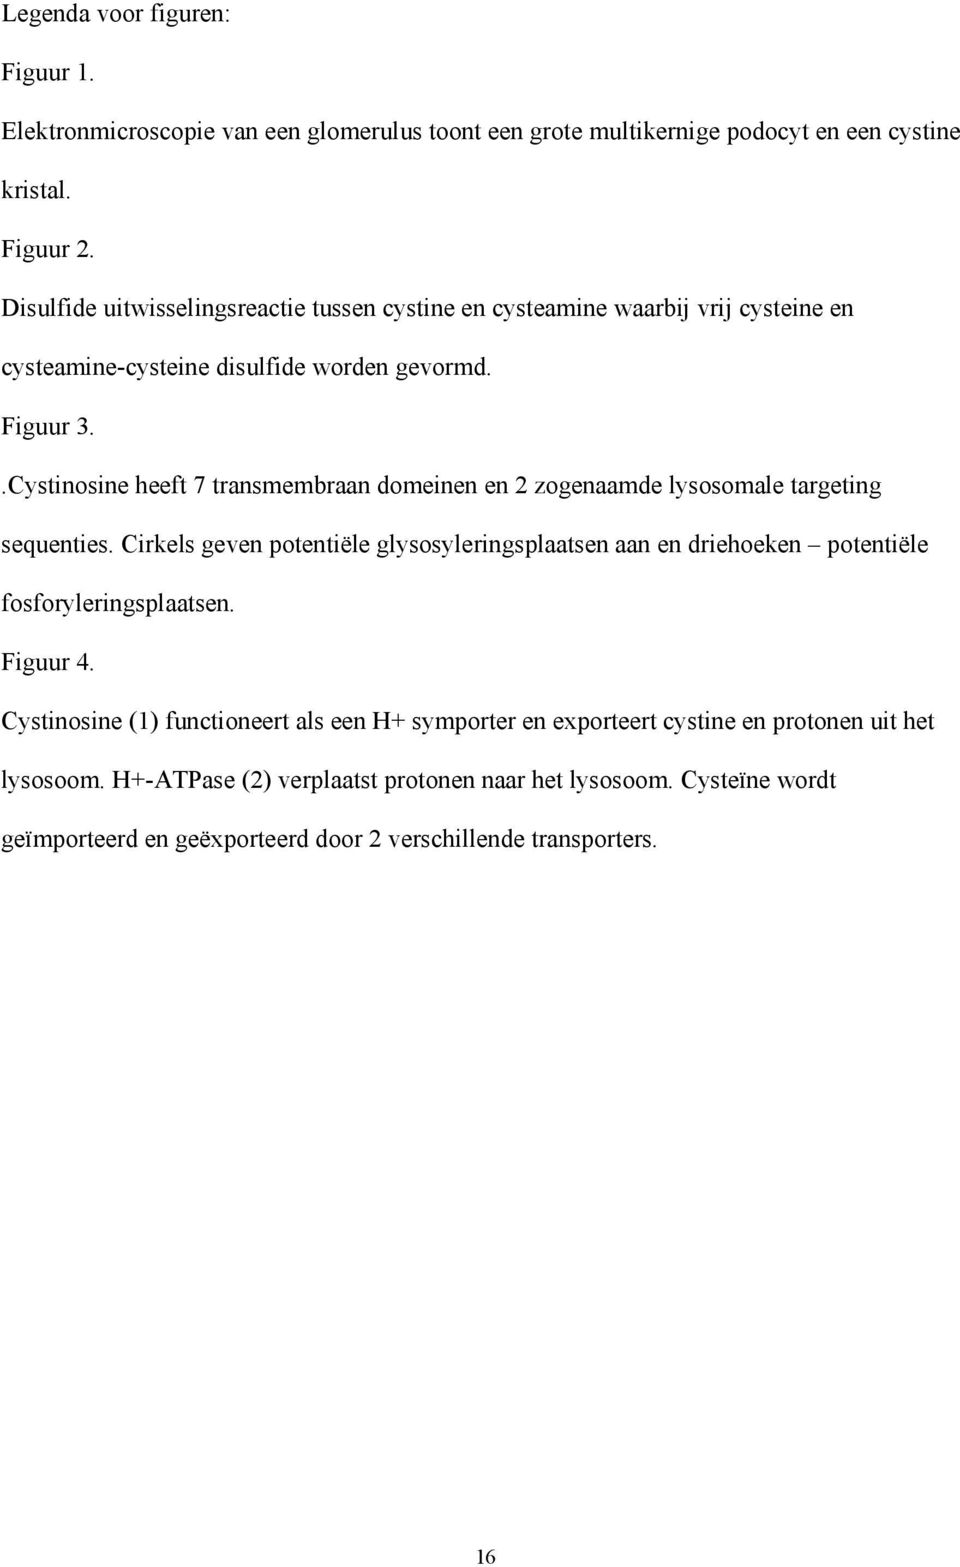 .Cystinosine heeft 7 transmembraan domeinen en 2 zogenaamde lysosomale targeting sequenties.